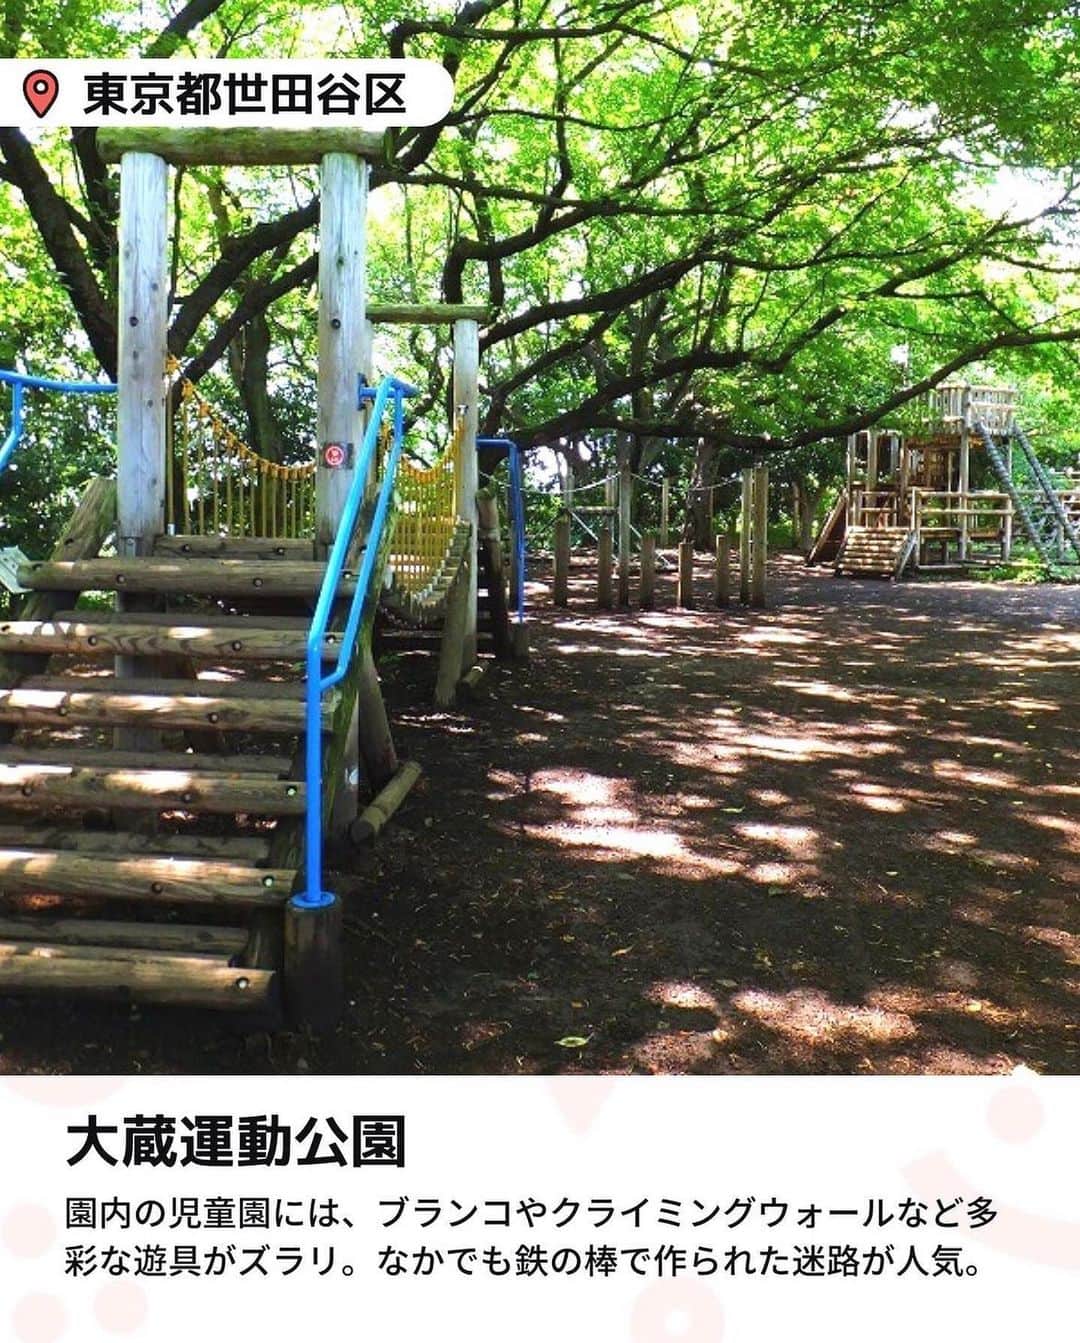 iko-yo（いこーよオフィシャル）さんのインスタグラム写真 - (iko-yo（いこーよオフィシャル）Instagram)「今回ピックアップしたのは「東京都内の無料アスレチックがある公園6選」 ーーーーーーーーーーーーーーーーーー  📍 東京都葛飾区 【水元公園】 東京23区内で最大規模の広さを誇り、ダイナミックな水郷風景を満喫できる公園。冒険広場には、バラエティ豊かな遊具がそろっています。なかでもターザンロープが人気で、週末には多くのファミリーが訪れ、列ができることもあるほど！ 園内には複数のトイレが設置されていて、おむつ交換台を備えているところもあるので、小さな子ども連れでも遊びに行きやすいです。  📍東京都新宿区 【落合公園】 西武新宿線の中井駅から徒歩約10分の緑と水場がある公園です。区立公園としては珍しいドッグランのほか、珍しくバスケットゴールがあるなど、多彩な楽しみ方ができます。 なかでも子供に大人気なのが、大型アスレチックや遊具。ターザン気分でボールを渡っていくポイントや、オリンピック競技に採用されたスポーツクライミングが楽しめるクライミングウォール、定番のすべり台などが用意されています。 また、広々と使える車いす対応トイレを完備しているので、小さな子どもとお出かけする際にも便利です。  📍東京都目黒区 【中根公園】 東急東横線の都立大学駅など3つの駅からアクセスでき、週末には多くの親子連れでにぎわう緑豊かな公園です。園内には、木製アスレチックや小さな子どもでも遊べる複合遊具があり、夏場には水遊びができるじゃぶじゃぶ池もオープン。目玉は、園内の傾斜を利用して作られたロングすべり台を含むアスレチックです。ロングすべり台をすべるには、木の吊り橋などのポイントをクリアする必要があり、登るときも楽しめるように設計されています。 園内の公衆トイレには、子ども用の補助便座や、おむつ替え台なども完備されていて、親子でお出かけしやすい公園になっています。  📍東京都世田谷区 【大蔵運動公園】 園内には多くのアスレチックや遊具があり、幼児から楽しめる公園です。園内の児童園には、ブランコやクライミングウォールなど多彩な遊具がズラリ。なかでも子どもたちに人気なのは、鉄の棒で作られた迷路です。迷路は中が見えるように作られているので、親は子どもがどこにいるかわかるので安心です。 多目的トイレも数カ所そろっていて、家族のお出かけにピッタリです。  📍東京都荒川区 【都立汐入公園】 隅田川に面し、季節の花々をはじめとした豊かな自然に恵まれています。アスレチックを含む多彩な遊具や、野外ステージ、テニスコートなどをそろえているほか、BBQができる広場（要予約）があるのも特徴です。園内の芝生広場にある「ツインタワー」と呼ばれるアスレチックには、綱渡りやスポーツクライミング、すべり台など数多くのポイントがあるので、子どもは大はしゃぎ。大人はBBQを楽しみ、子どもは遊具を楽しむなど、親子ともに充実した1日を過ごせる公園です。  📍東京都江戸川区 【小松川境川親水公園】 大きく5つのゾーンに分かれている親水公園。それぞれのゾーンには、滝や飛び石、吊り橋などが配され、全域で水遊びが楽しめます。園内には、全国でも珍しい足元に水遊び場がある木製アスレチックも。水遊び場は浅いので、浮き輪がなくても安全に遊べるうえ、夏季シーズンである7月〜8月の間は毎日点検が行われるので安心です。 すべり台や砂場などもあるので、ぜひ親子でお出かけしてみてくださいね。  ※2023年5月10日時点の情報です。 最新の情報は公式HPや「いこーよ」サイトでご確認ください。 ーーーーーーーーーーーーーーーーーーー おでかけ情報量は日本最大級！ 子どもとお出かけ情報サイト「いこーよ」 「親子でおでかけしたい場所」をご紹介させていただいています！  お子さんとのおでかけの思い出の写真を、このアカウントをフォローの上#いこーよ をつけてぜひ投稿してください。魅力的な写真は、いこーよ公式SNSで紹介させていただきます！  募集中タグ#いこーよ #いこーよおでかけ部　  「子どもと行きたい！」と思ったら保存が便利！ プロフィールのURLから「いこーよ」のサイトに行くと、他の投稿やオトクな情報などが載っています♪ ☞ @ikoyo_odekake  #いこーよ #お出かけ #おでかけ #お出かけスポット #子連れ #子連れ旅行#こどものいる暮らし #子連れスポット #いこーよお出かけ部 #子どもとおでかけ #新宿ママ  #葛飾ママ #葛飾観光 #葛飾旅行 #世田谷ママ #世田谷観光 #世田谷旅行 #荒川ママ #荒川旅行 #荒川観光 #外遊び #アスレチック  #水元公園 #落合公園 #中根公園 #大倉運動公園 #都立汐入公園 #小松川境川親水公園」5月14日 21時33分 - ikoyo_odekake